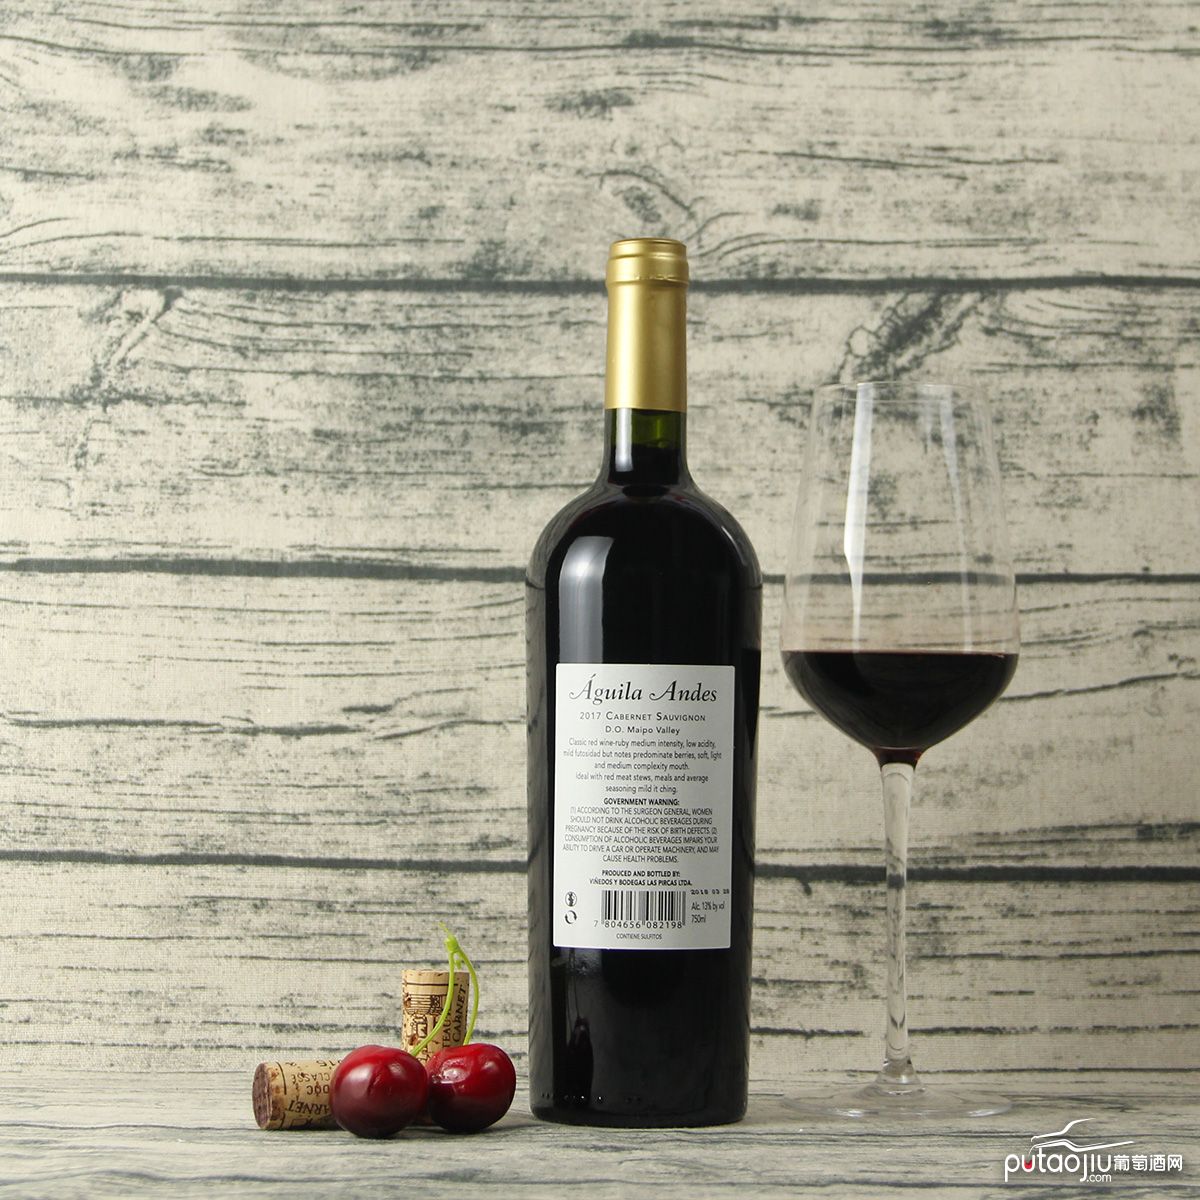 智利迈坡谷安第斯雄鹰赤霞珠品种级干红葡萄酒红酒